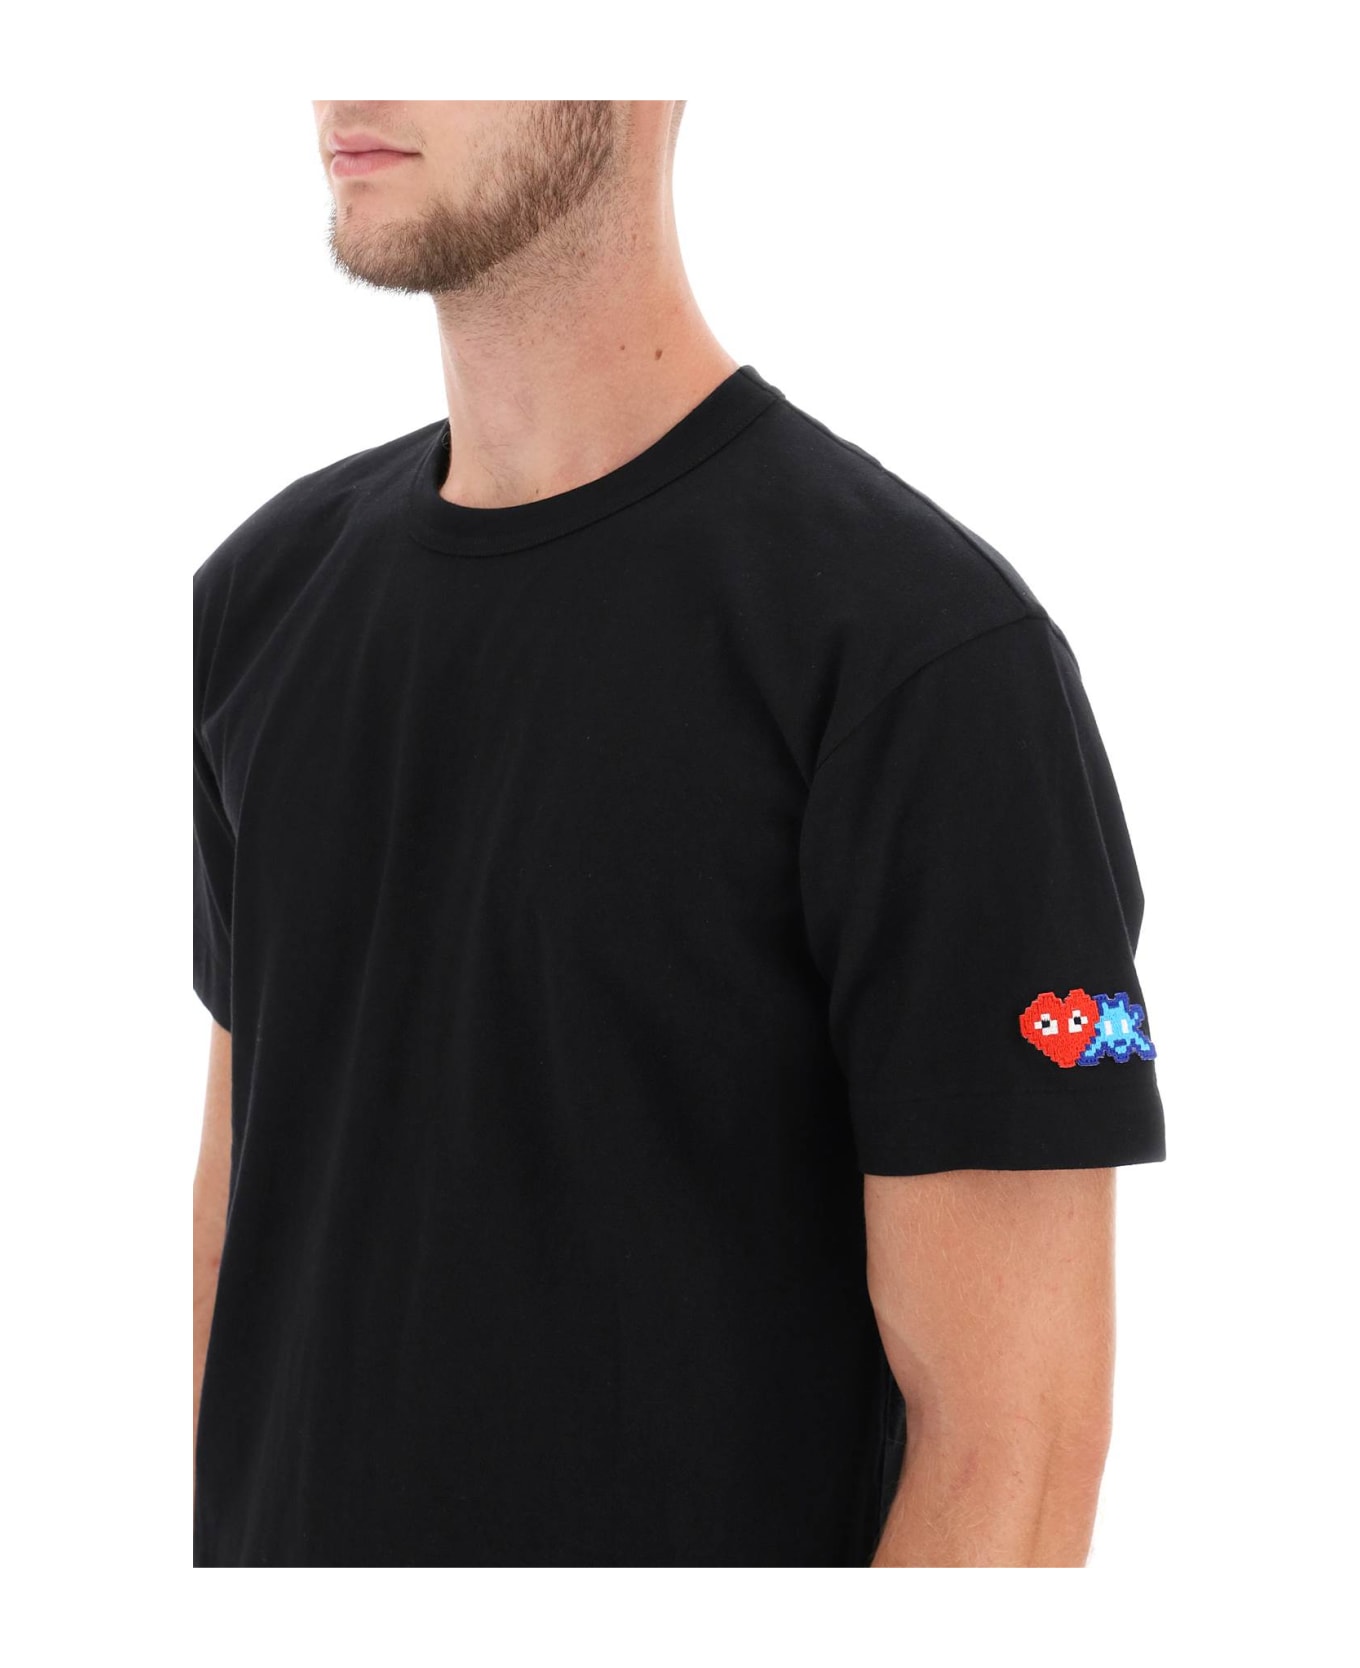 Comme des Garçons Shirt Boy T-shirt With Pixel Patch - Black シャツ